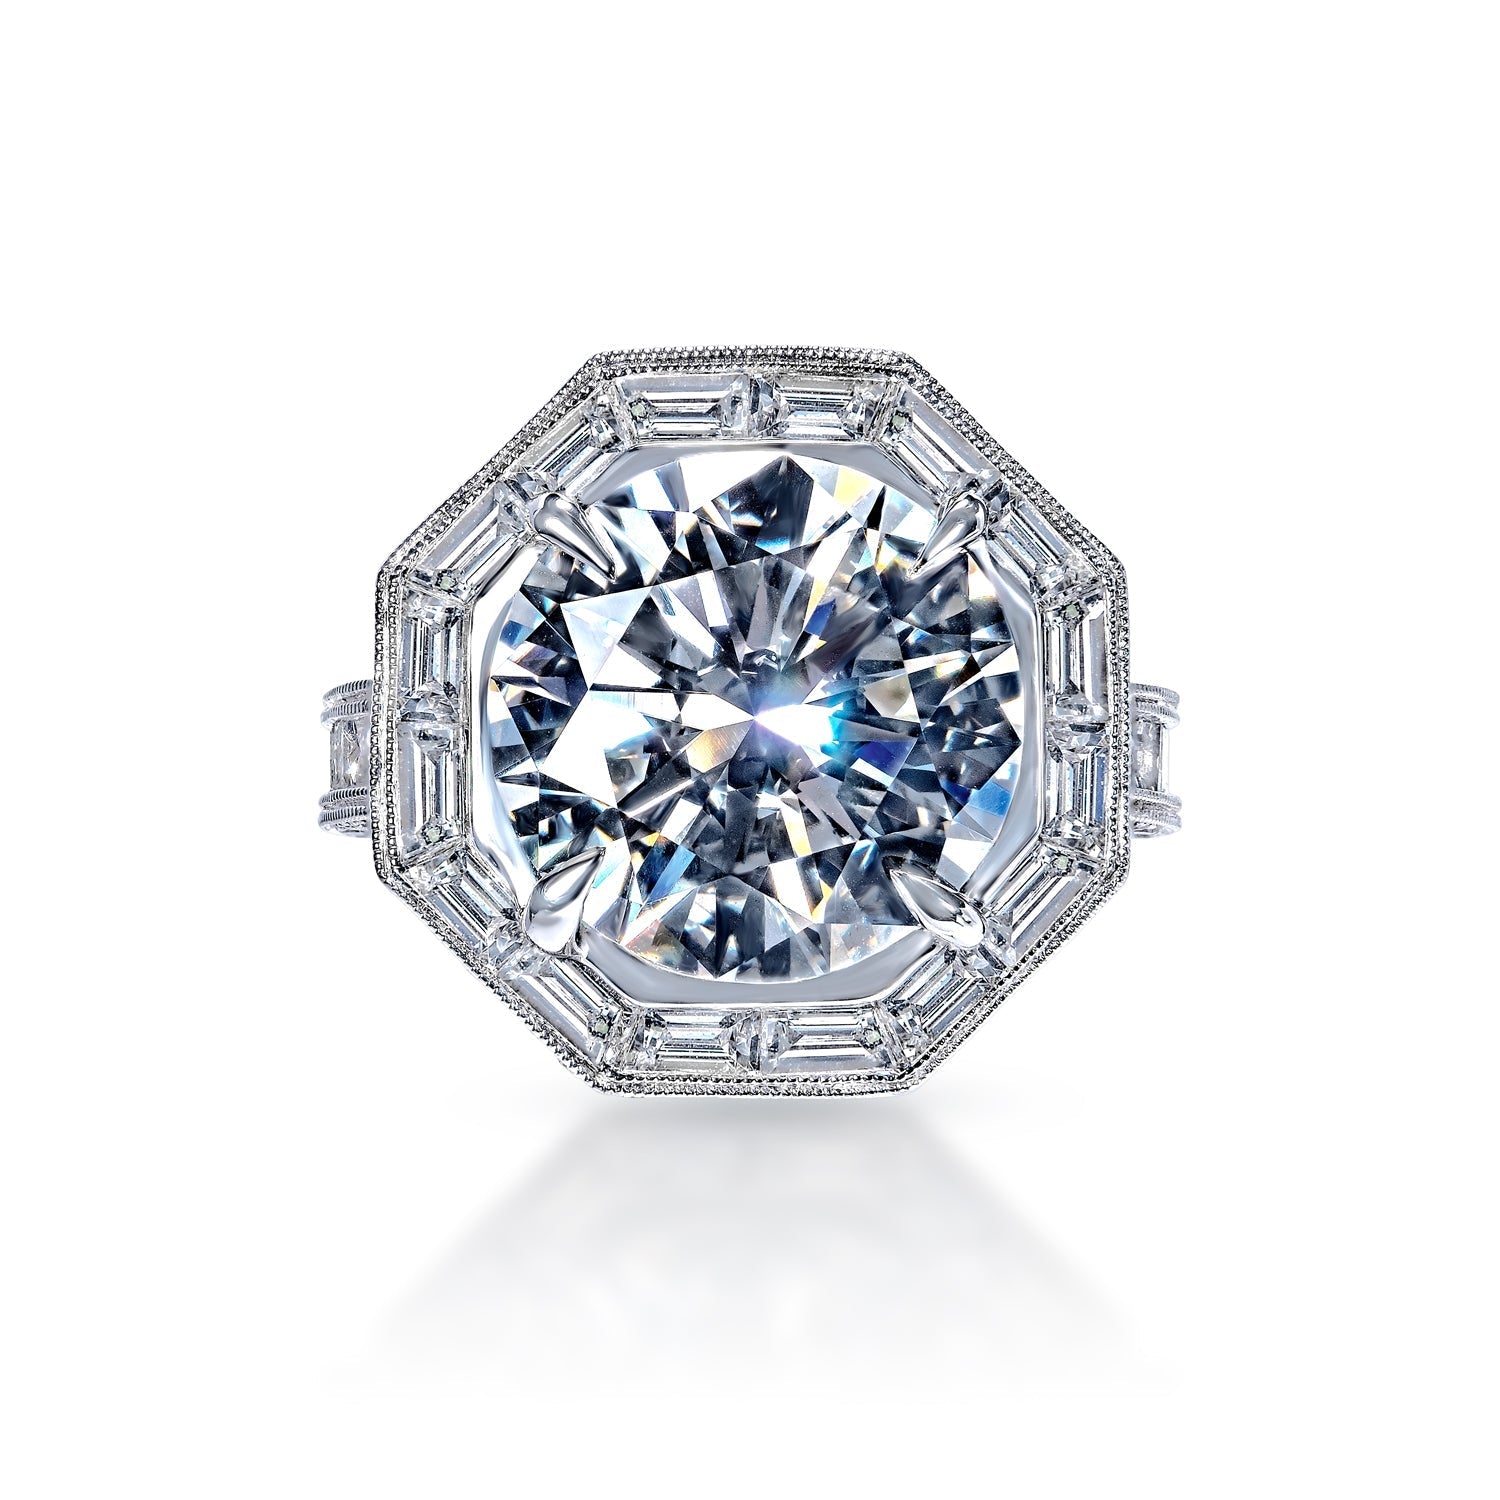 My (now) fiancée's ring, .8 carat, D color VVS1. : r/EngagementRings